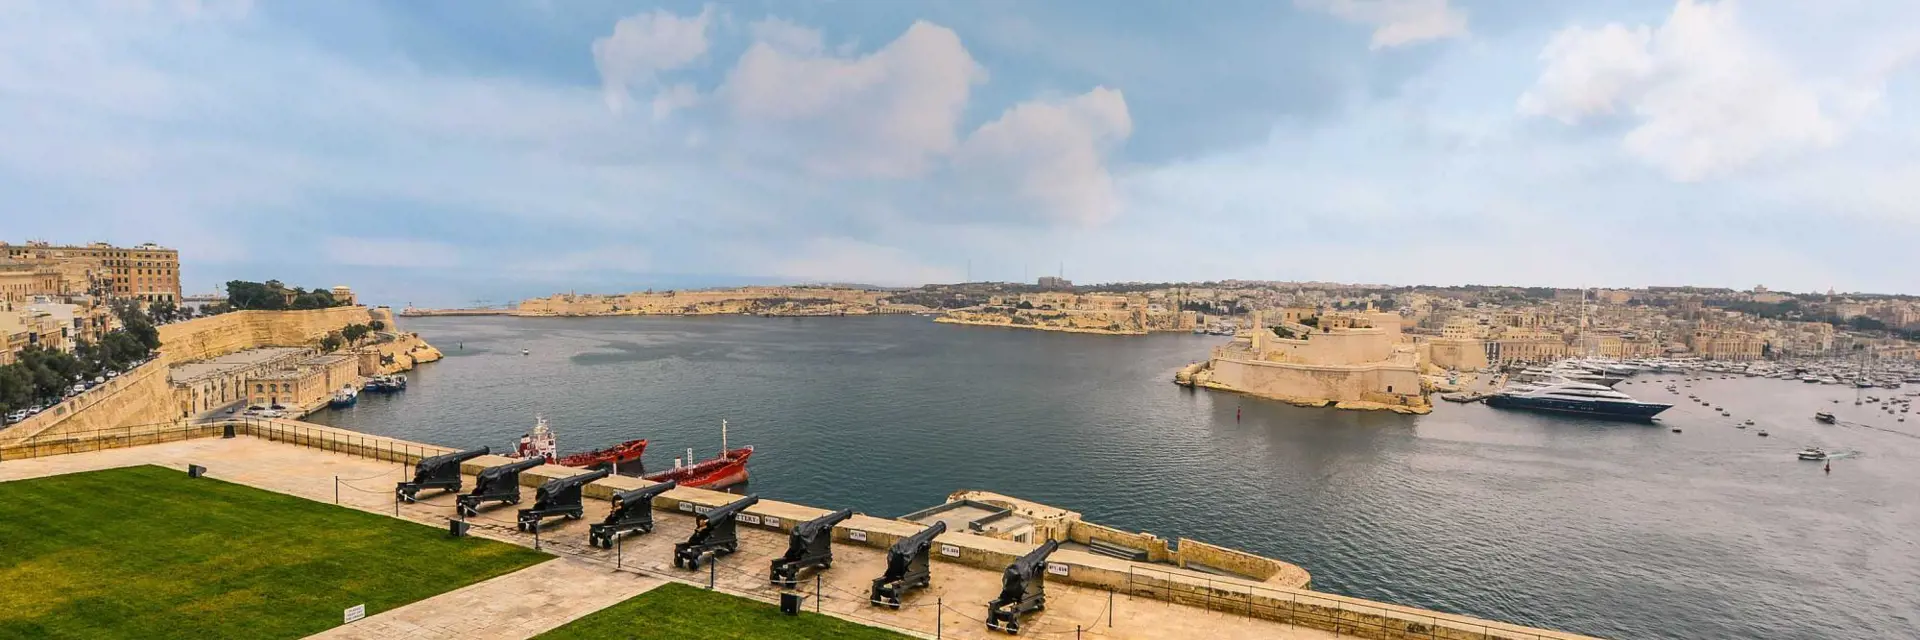 Incentive trip to Malta 